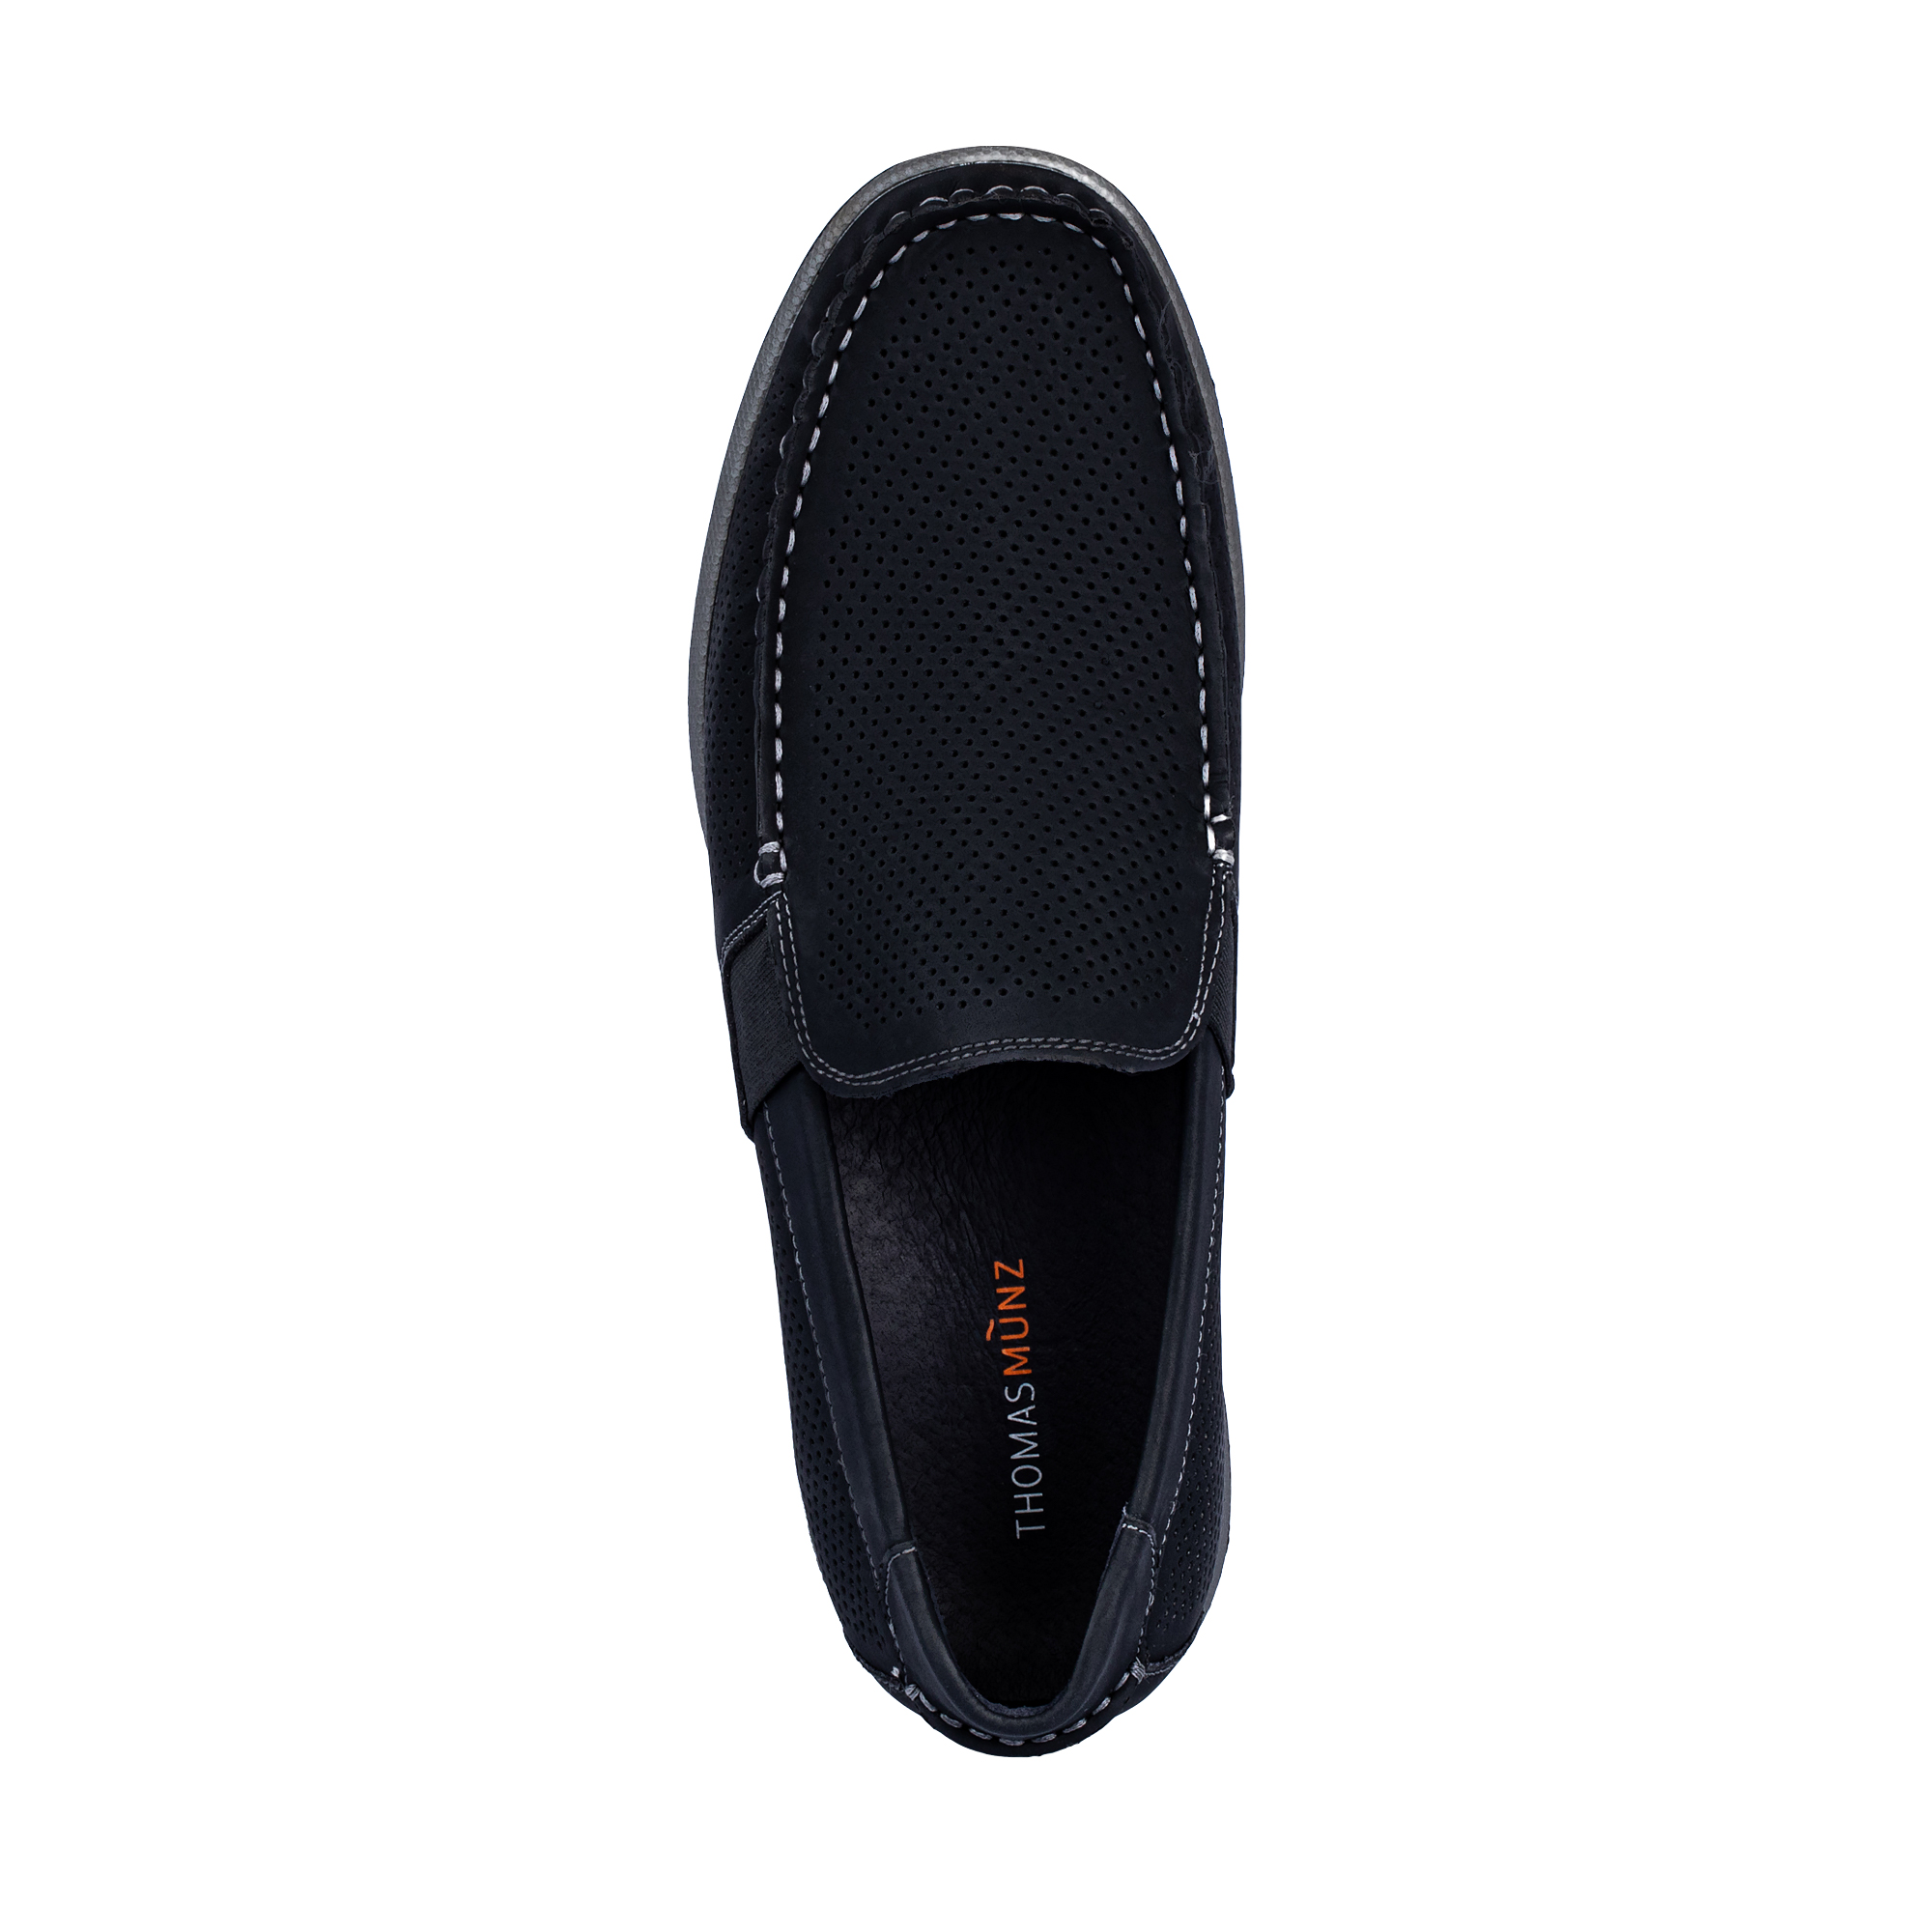 Туфли/полуботинки Thomas Munz 058-124C-1602, цвет черный, размер 41 - фото 5